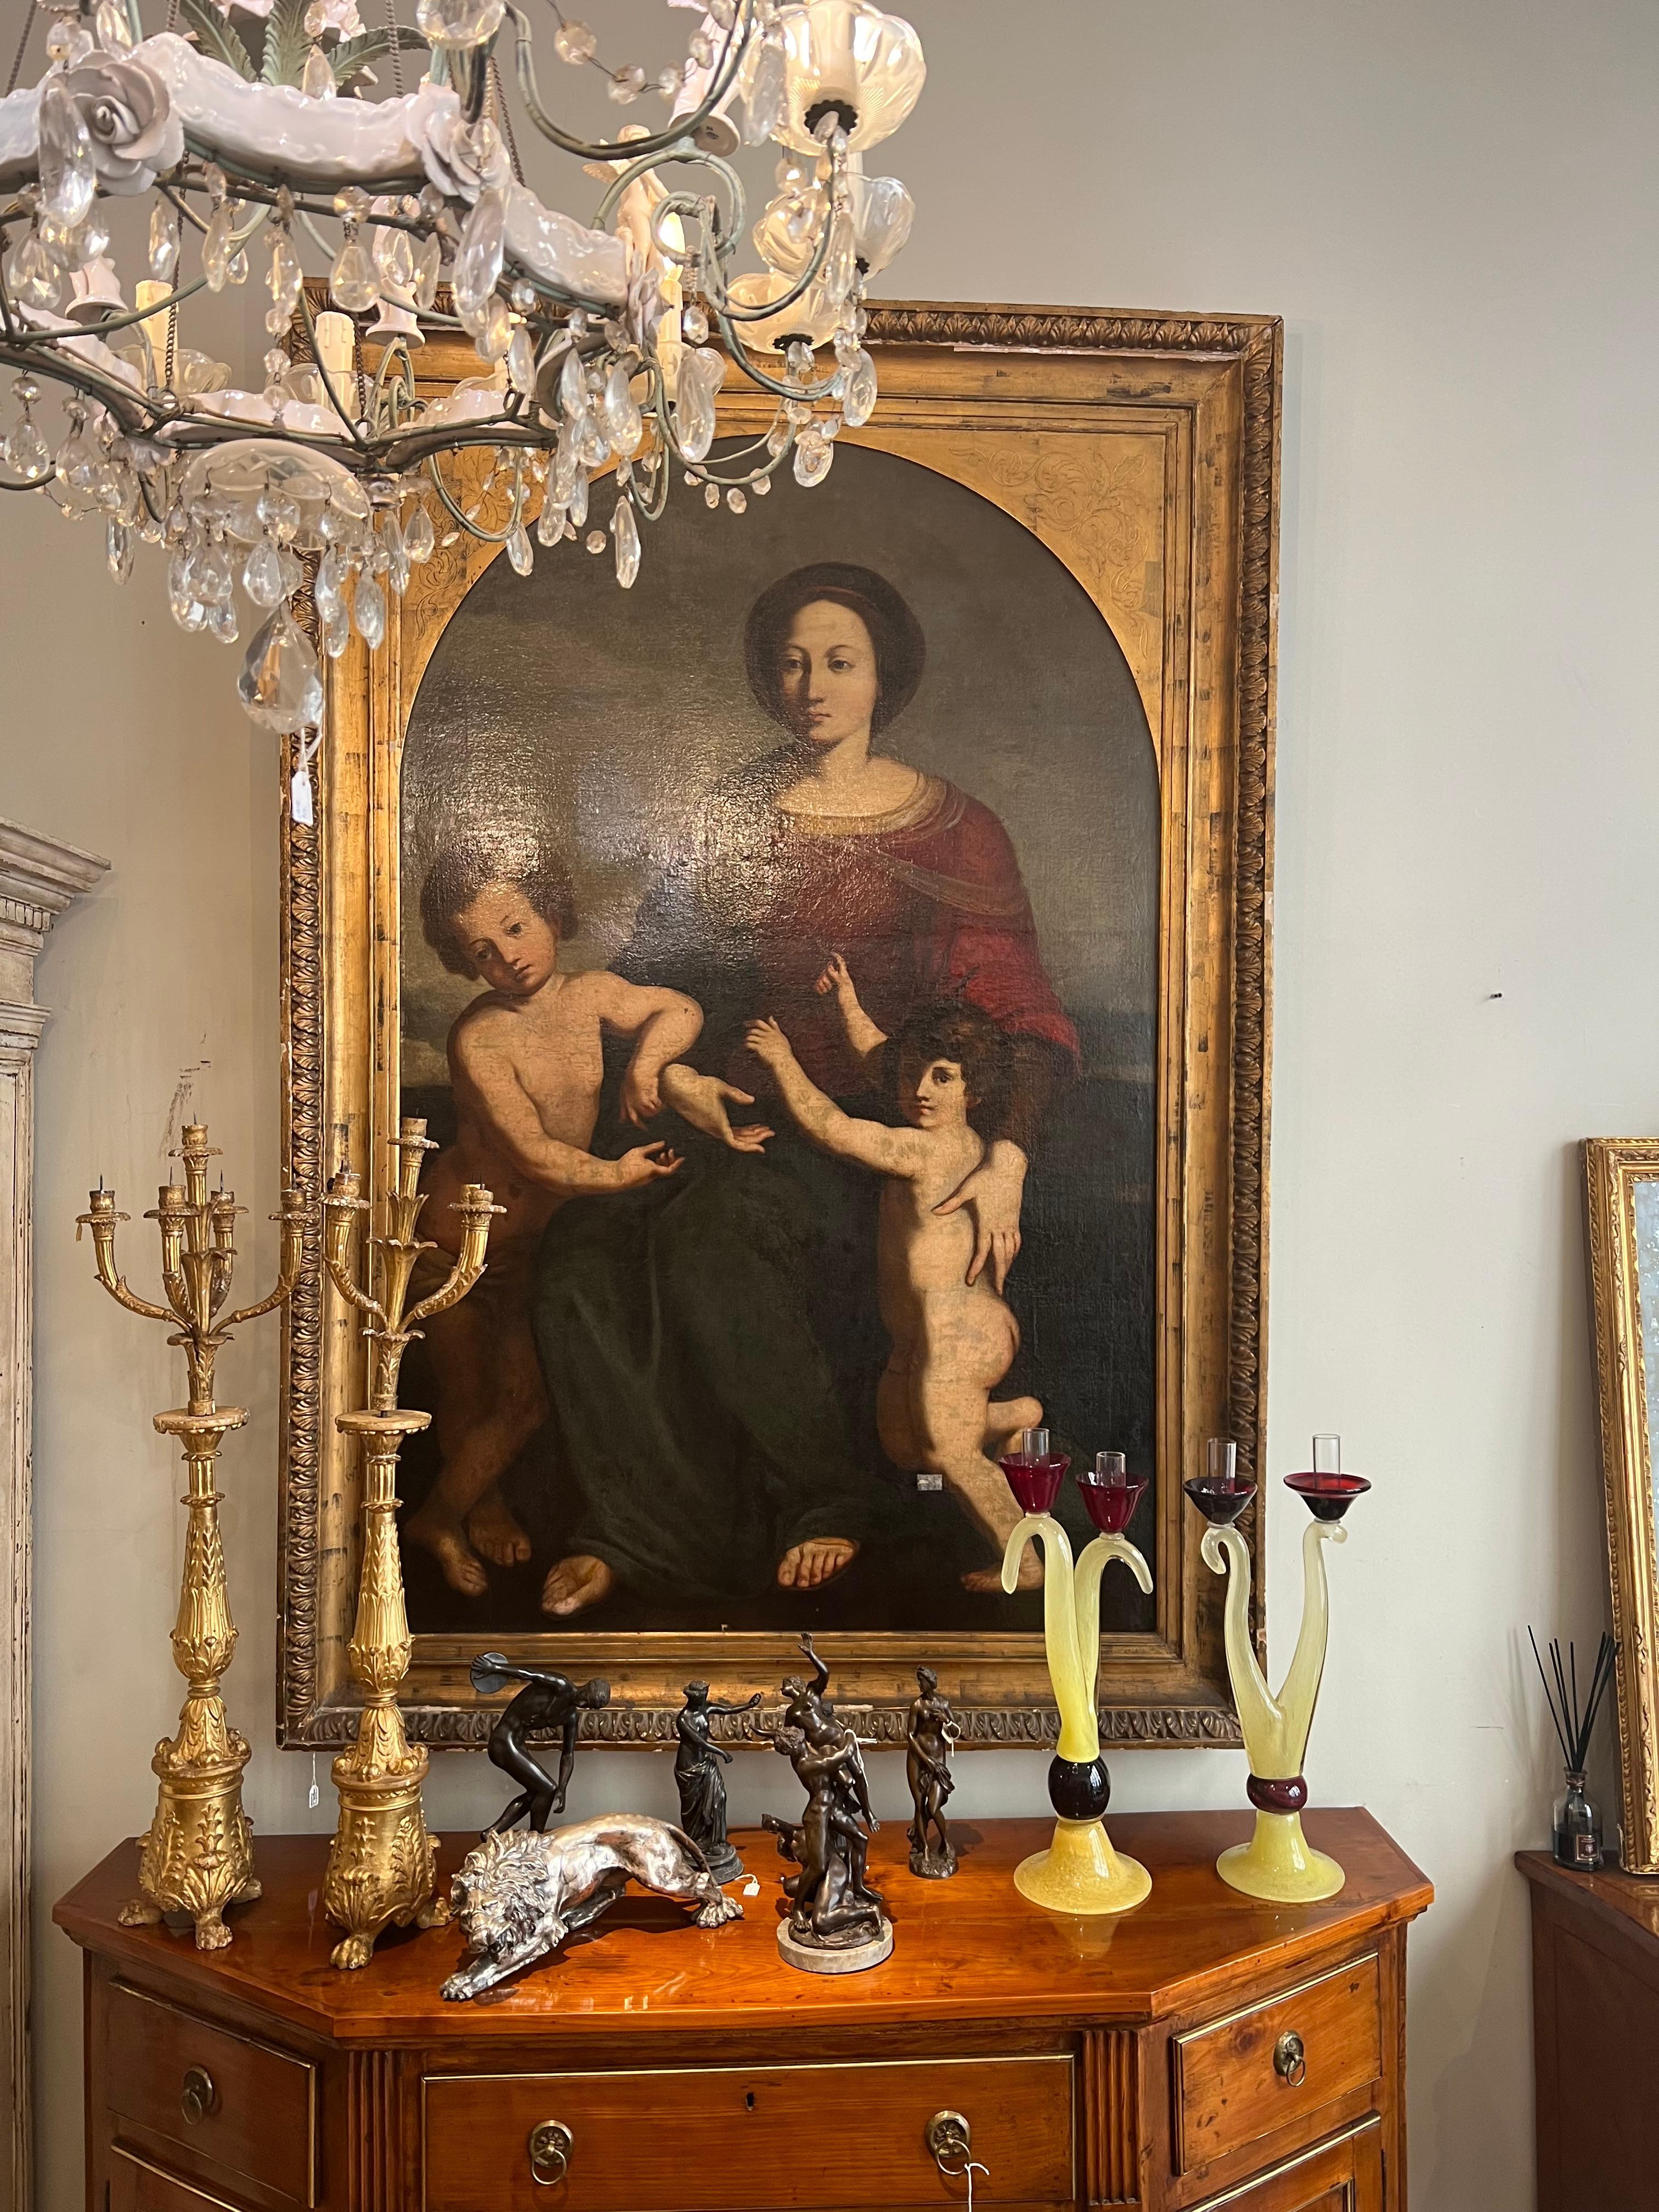 Grande peinture à l'huile sur toile représentant la Vierge à l'enfant et San Giovannino dans un cadre en bois sculpté et doré.
Le sujet est particulier car il sort des canons classiques de la représentation de la Maternité en présentant une Madone